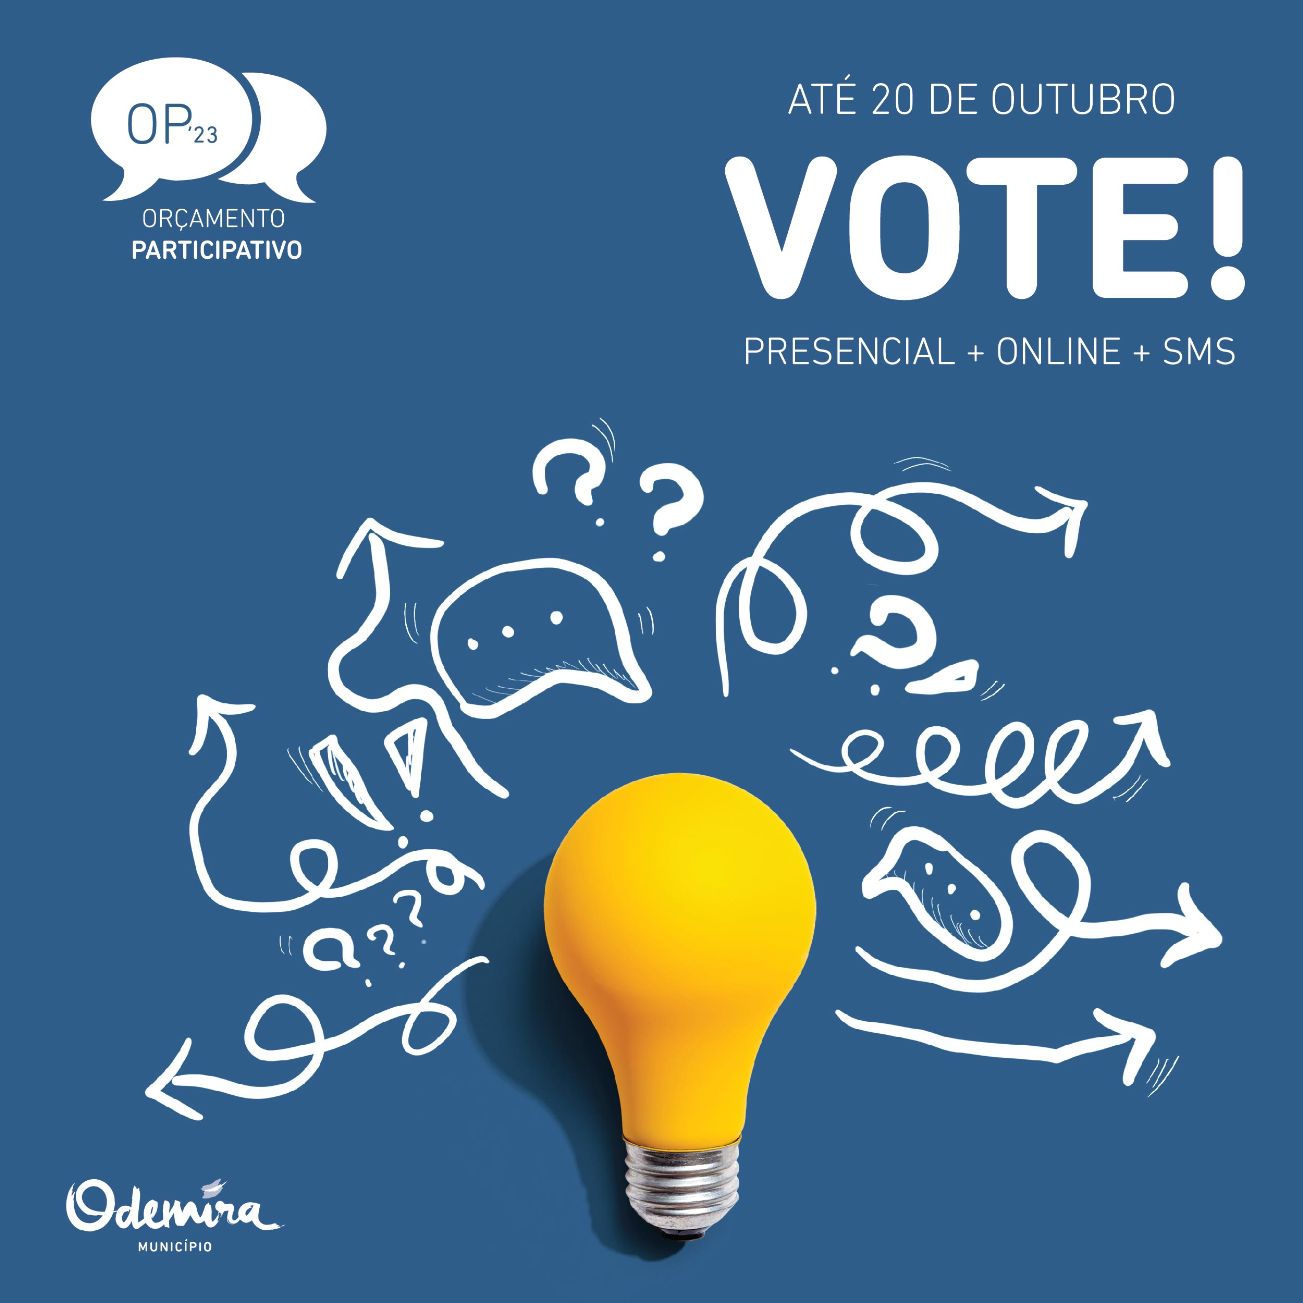 População de Odemira pode votar em propostas no OP Municipal e das Freguesias